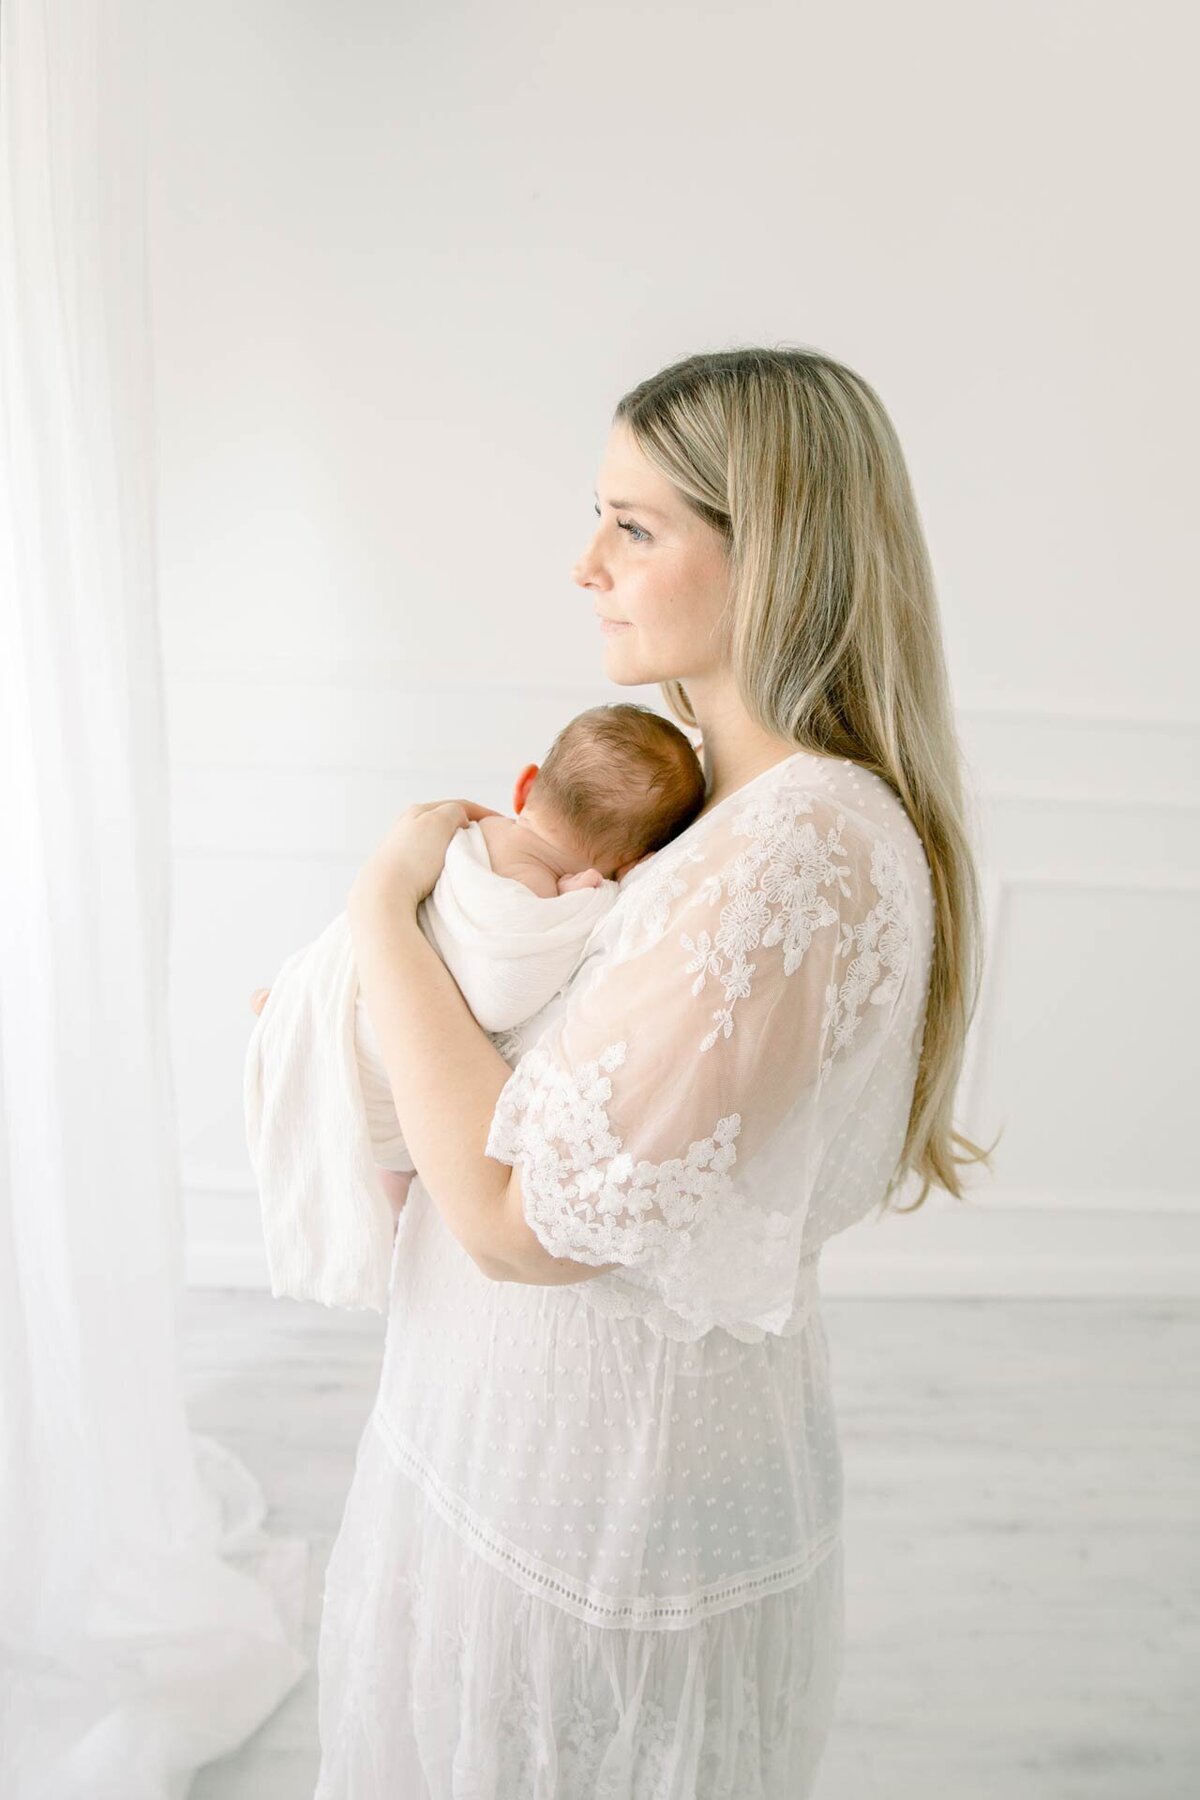 Kunstvolle Babyfotografie in weiß gehalten mit Mutter im weißen Spitzenkleid und schlafendem Baby im Arm